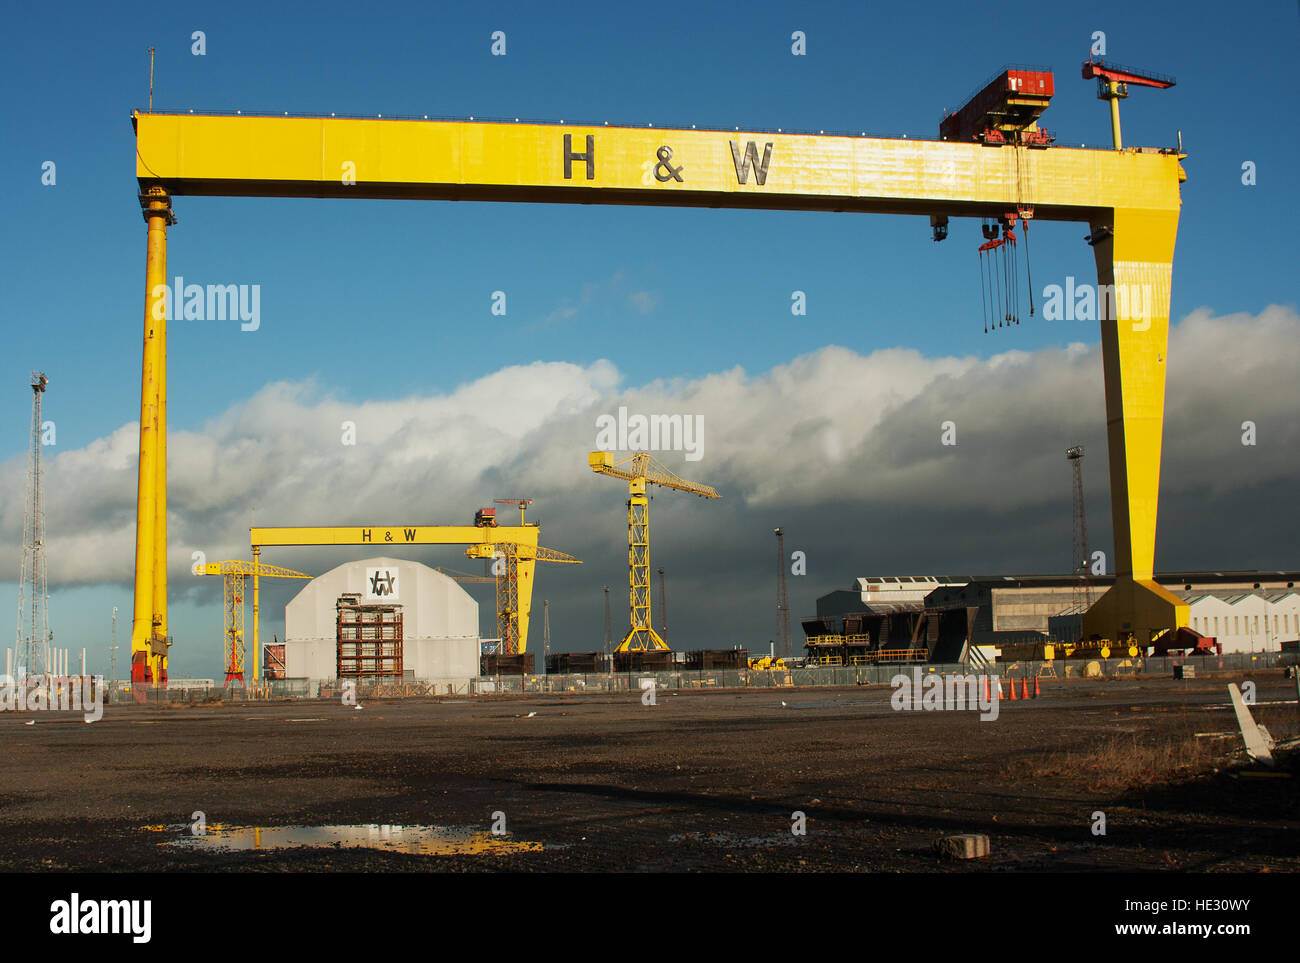 L'un d'une paire de grandes grues de construction navale nommé Samson et Goliath au chantier naval Harland and Wolff de Belfast. Accueil du Titanic Banque D'Images